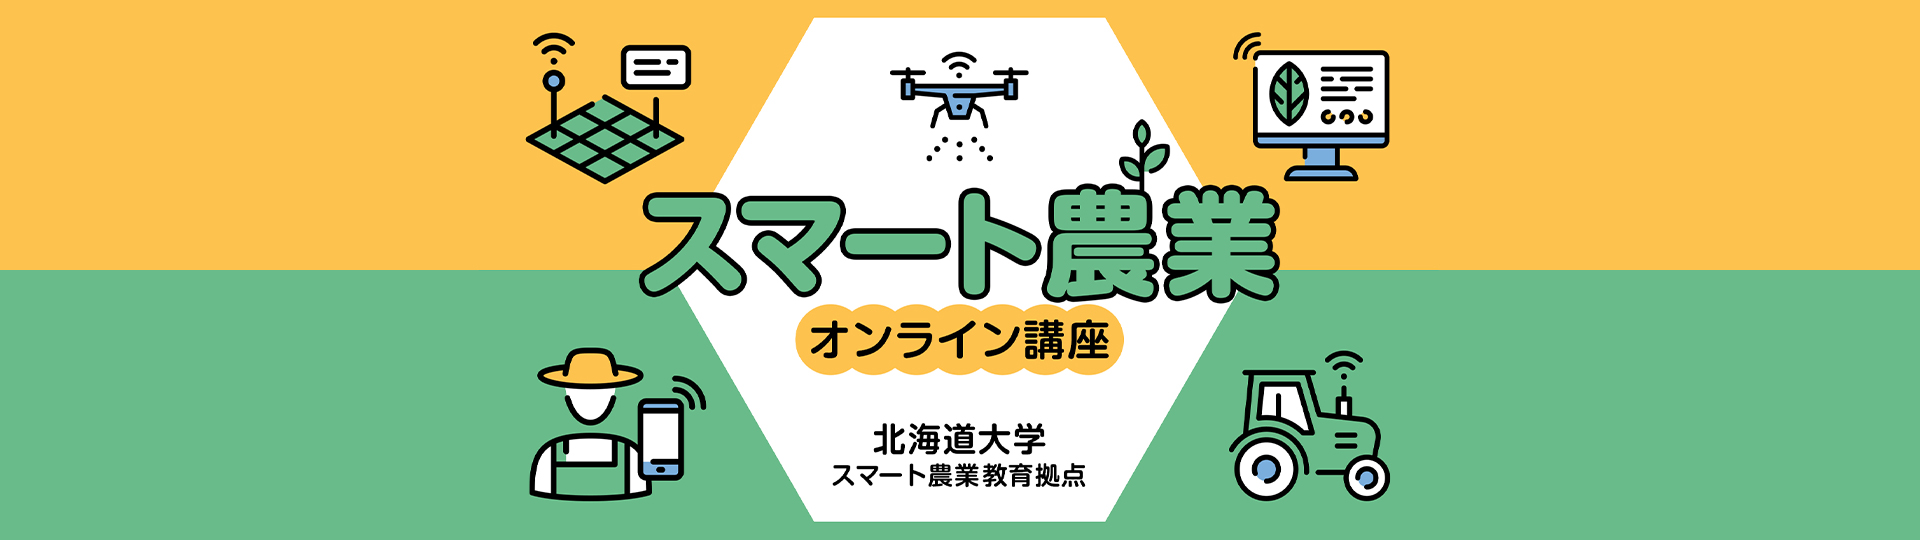 スマートに学んで活かそう スマート農業オンライン 日本の農業の未来創造